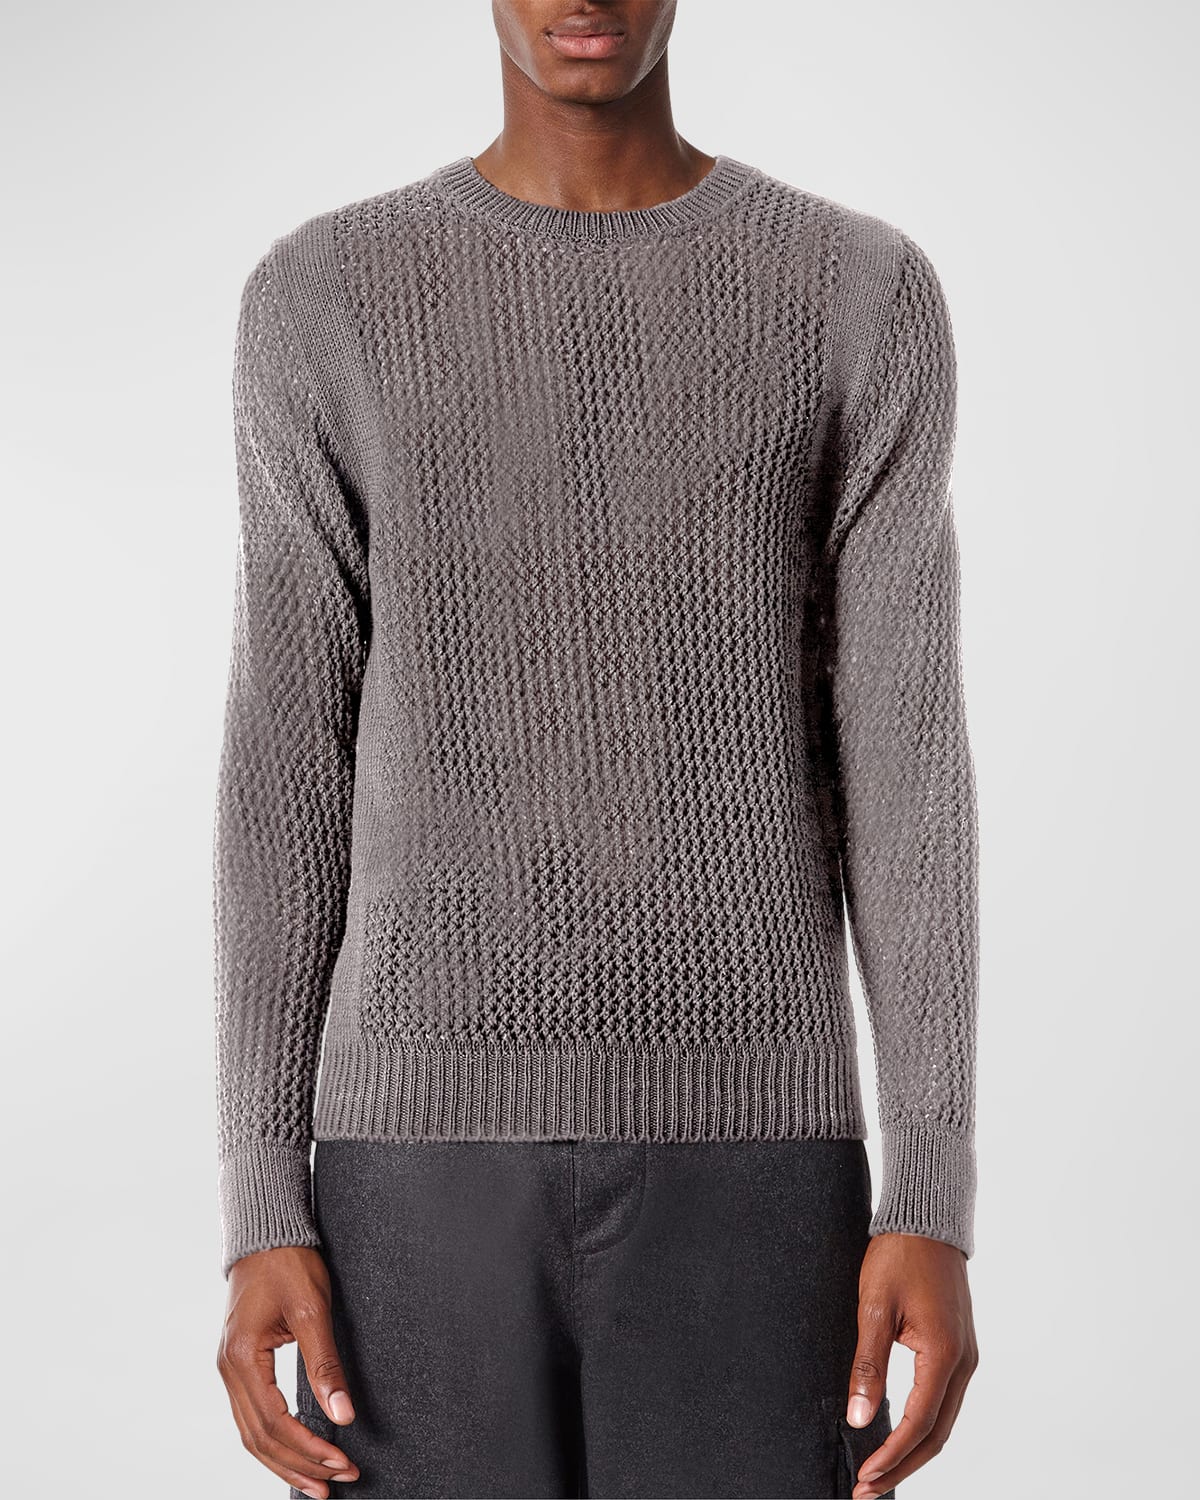 Men's Open Work Sweater